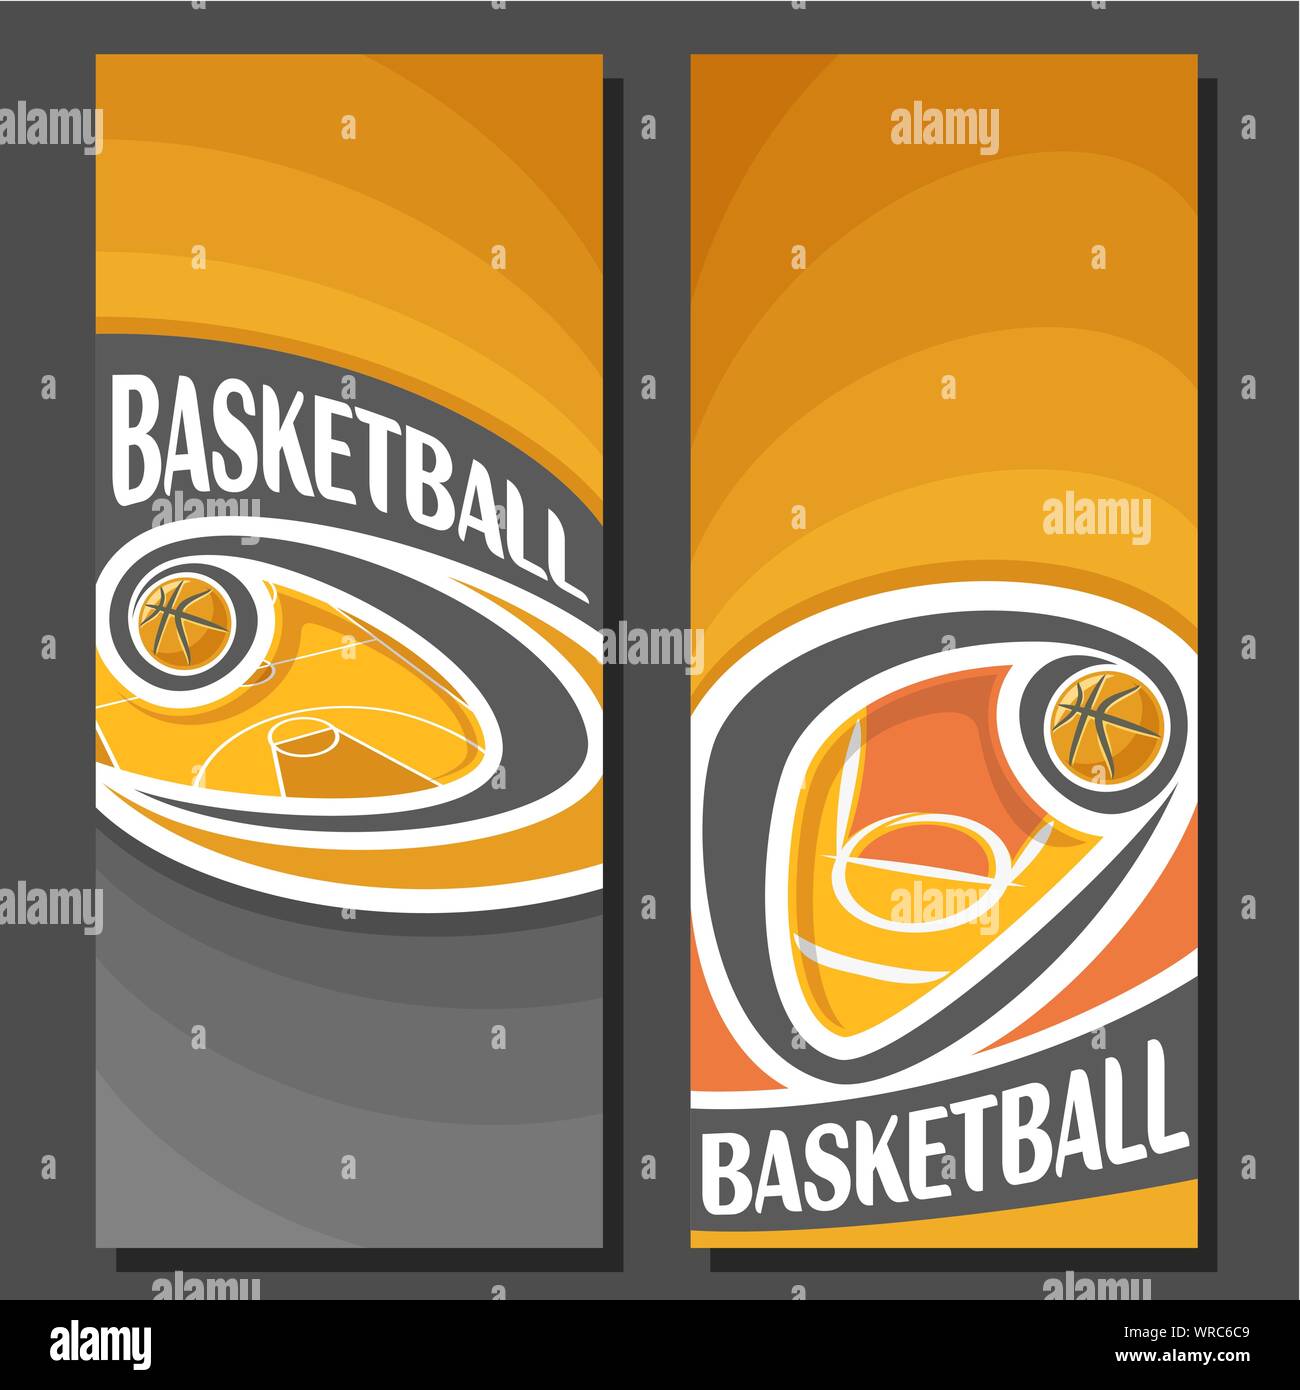 Vettore Banner verticale per il Basket: 2 formati di testo sul tema di pallacanestro, corte arancione con battenti sulla curva palla su sfondo nero. Illustrazione Vettoriale